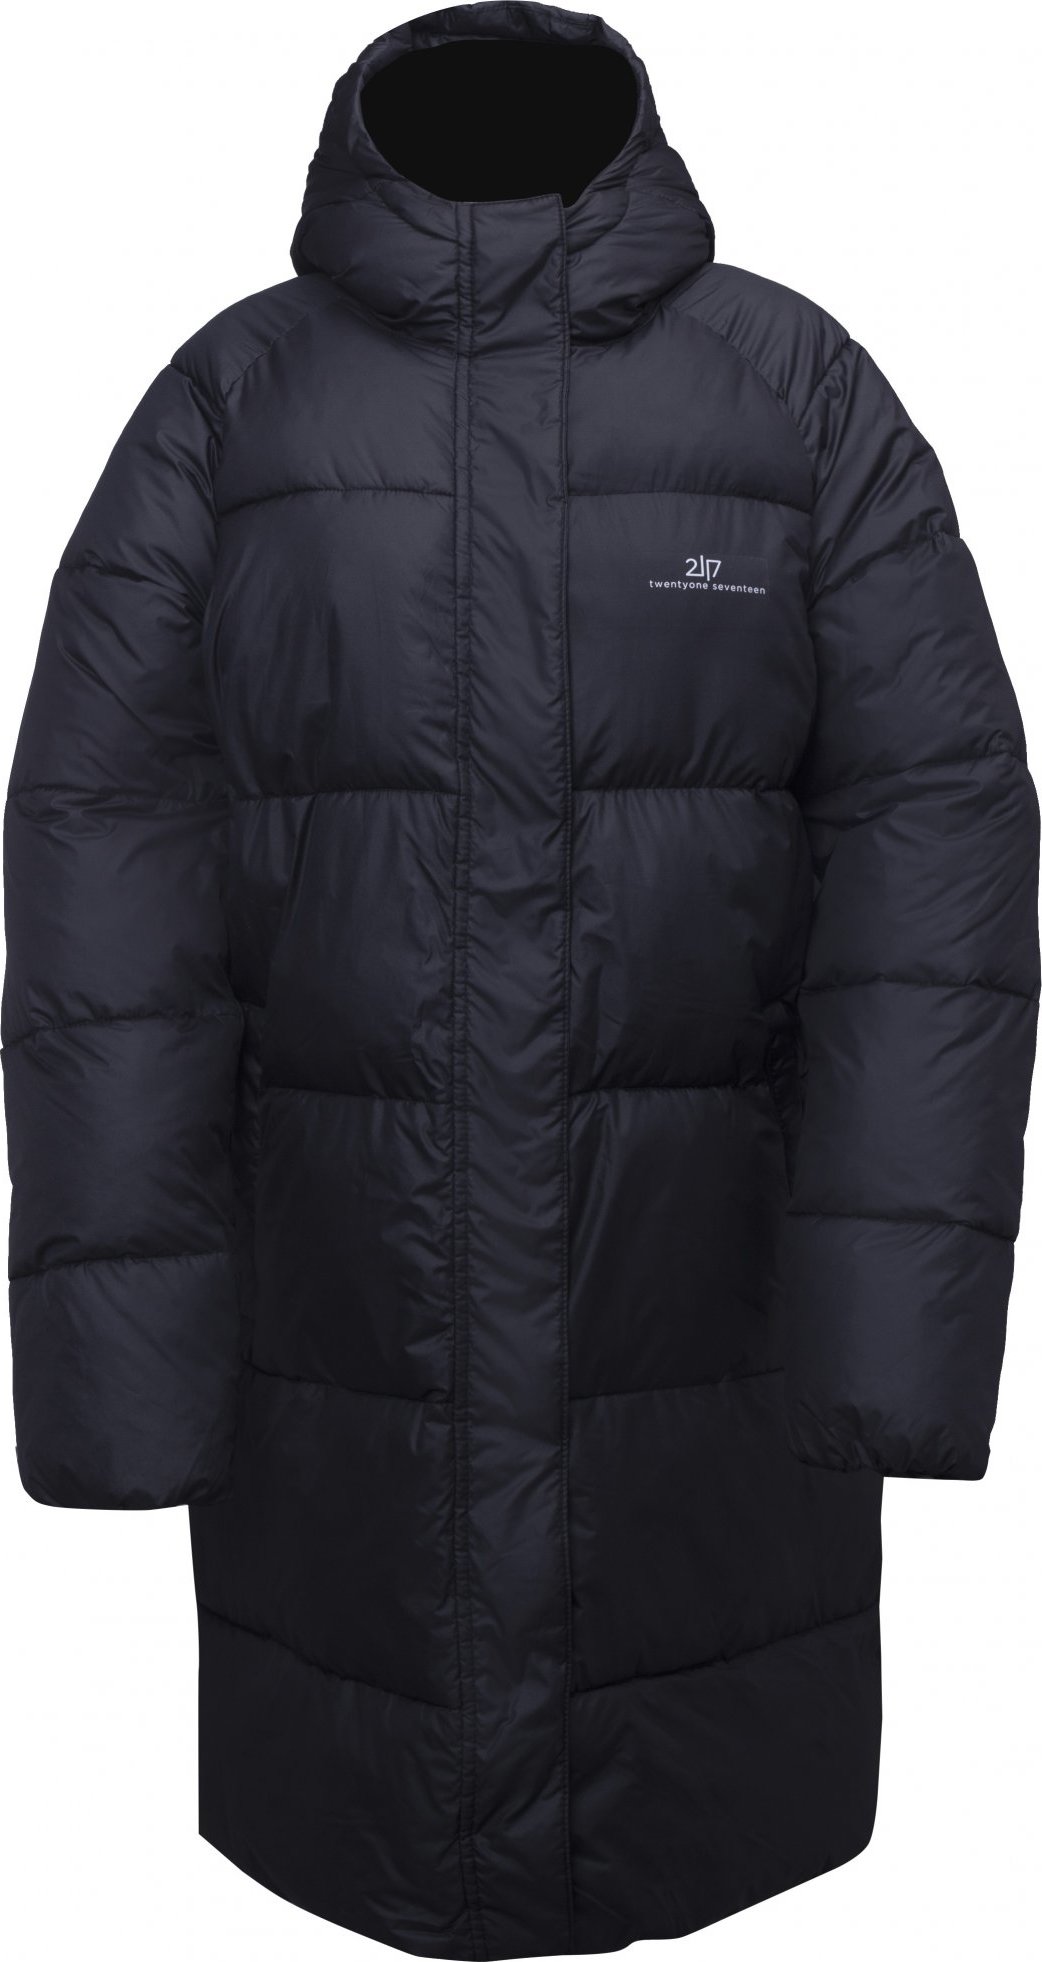 Dámský zimní prošívaný kabát 2117 Axelsvik černá Velikost: L